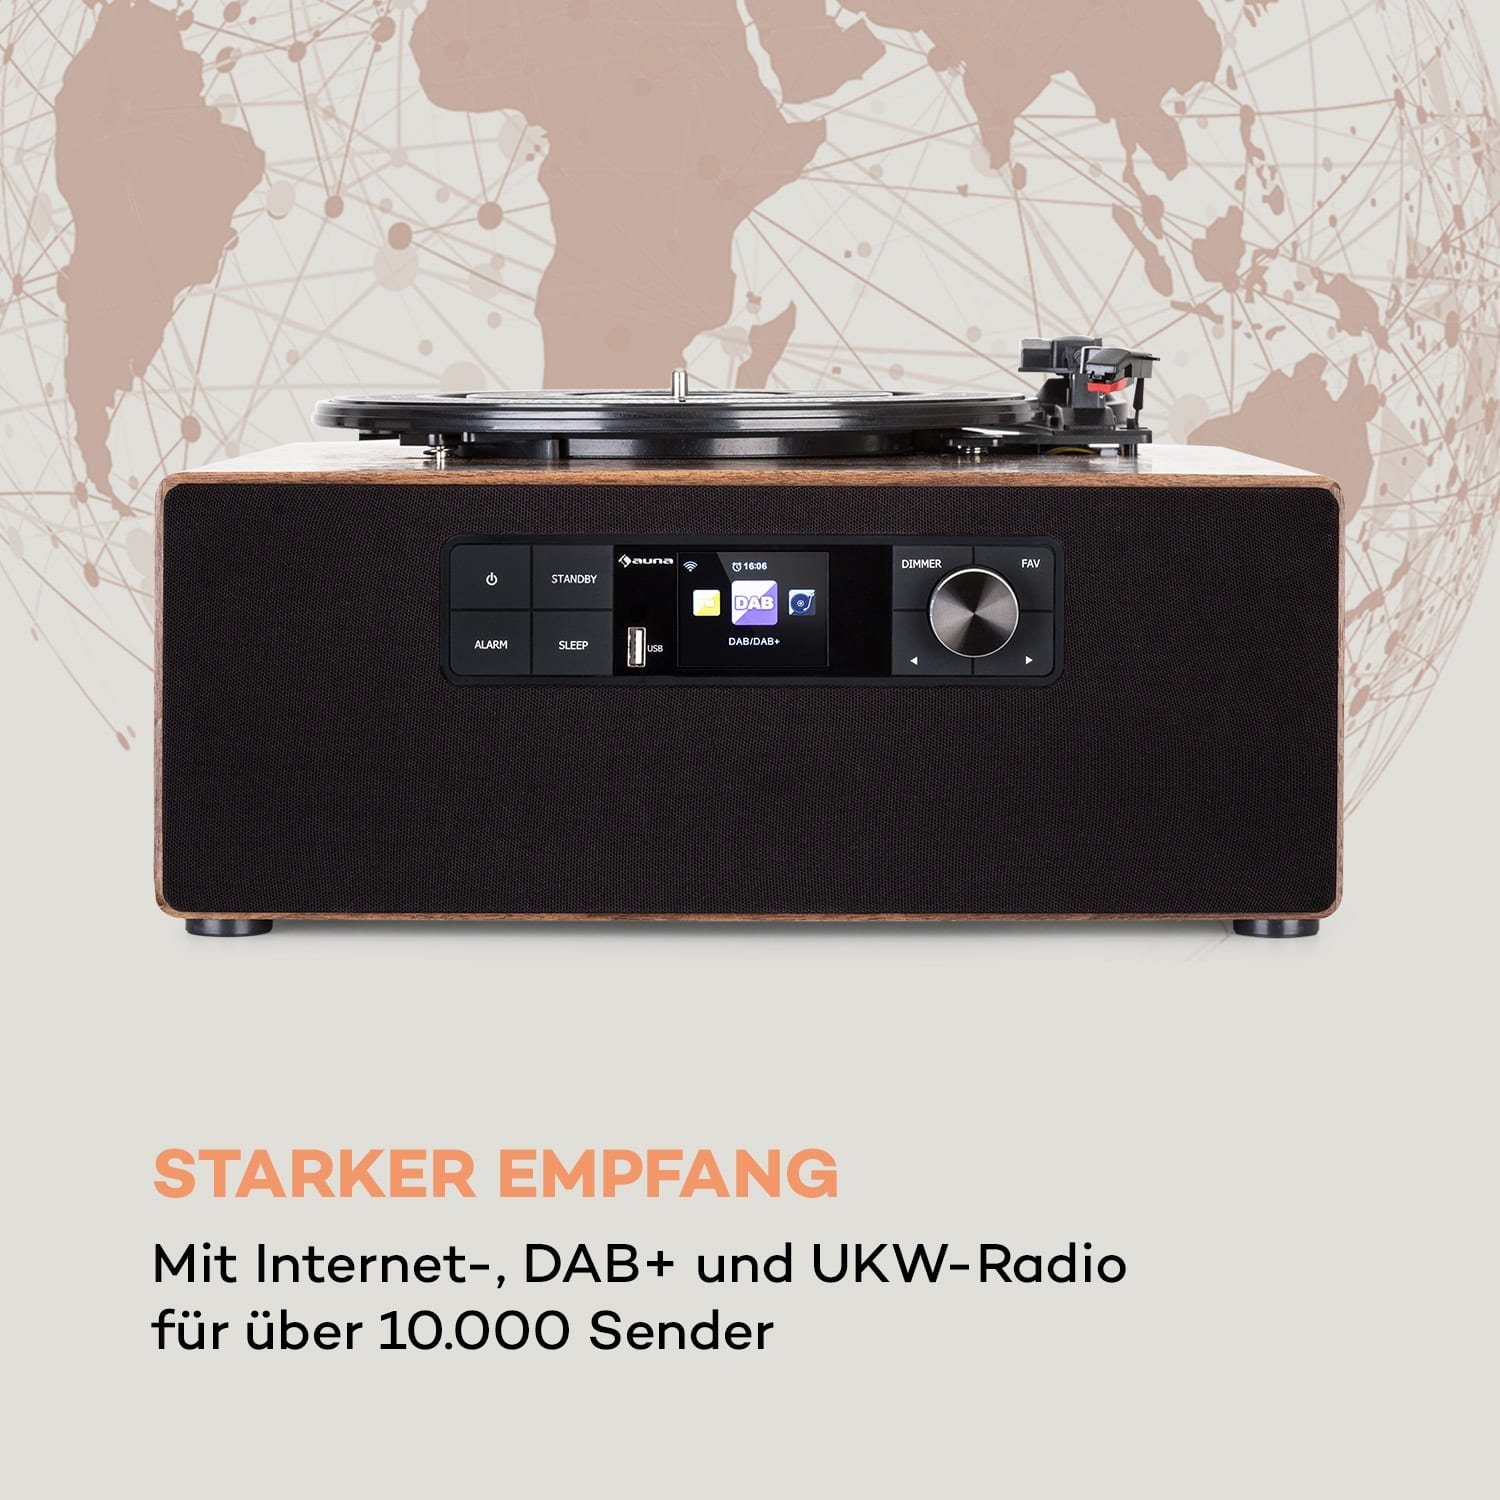 mit Vinyl Auna Schallplattenspieler Radio (Riemenantrieb, Plattenspieler) Bluetooth, Cube Lautsprecher Plattenspieler Connect Vinyl